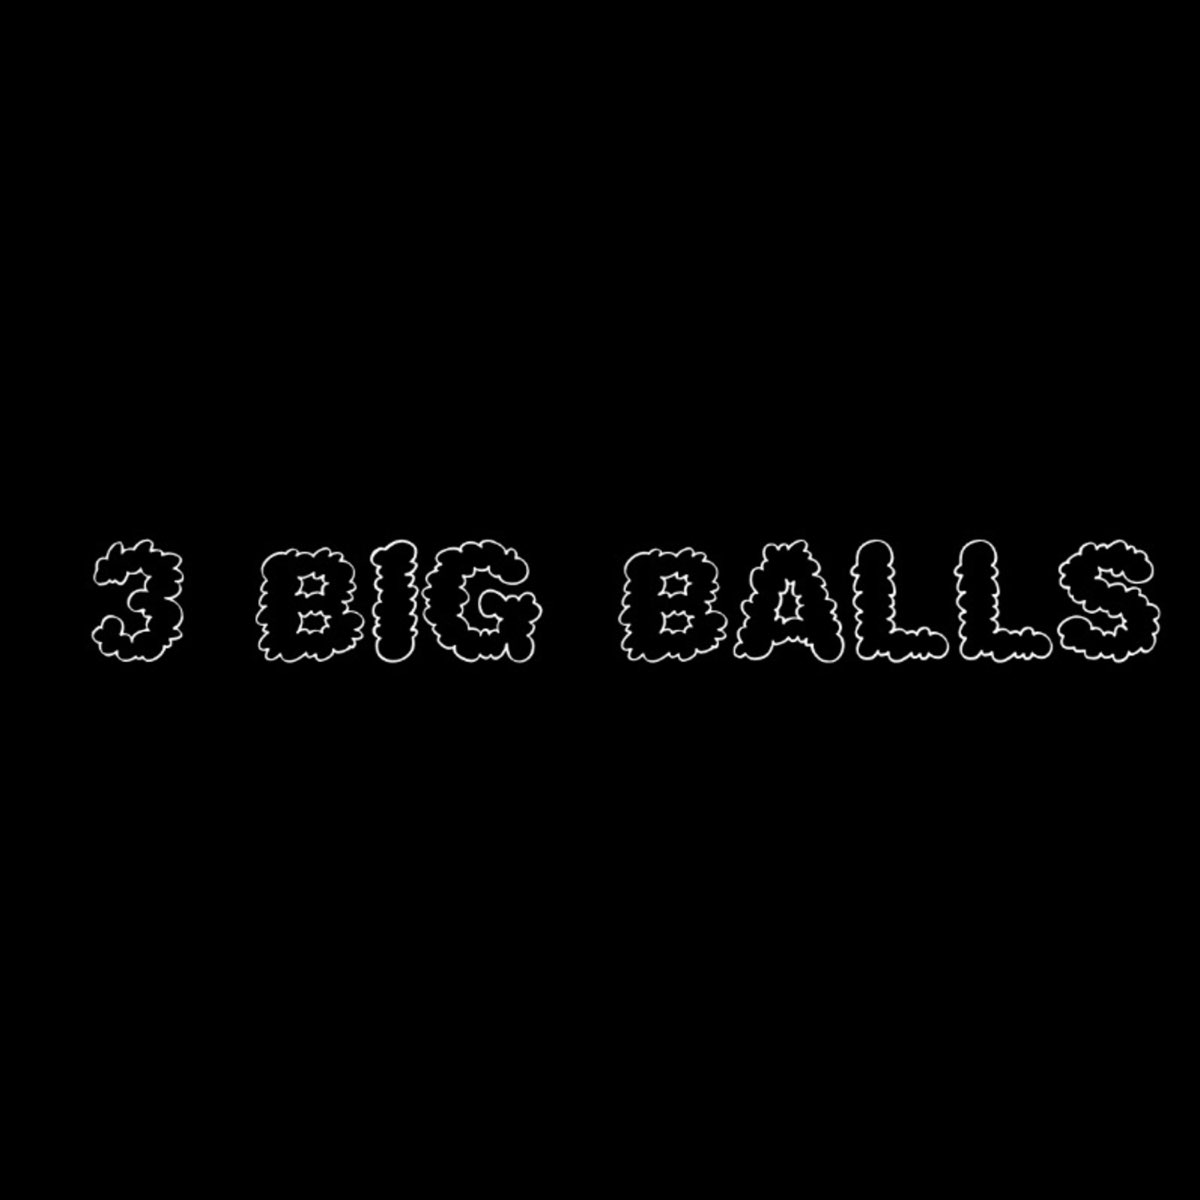 3big balls